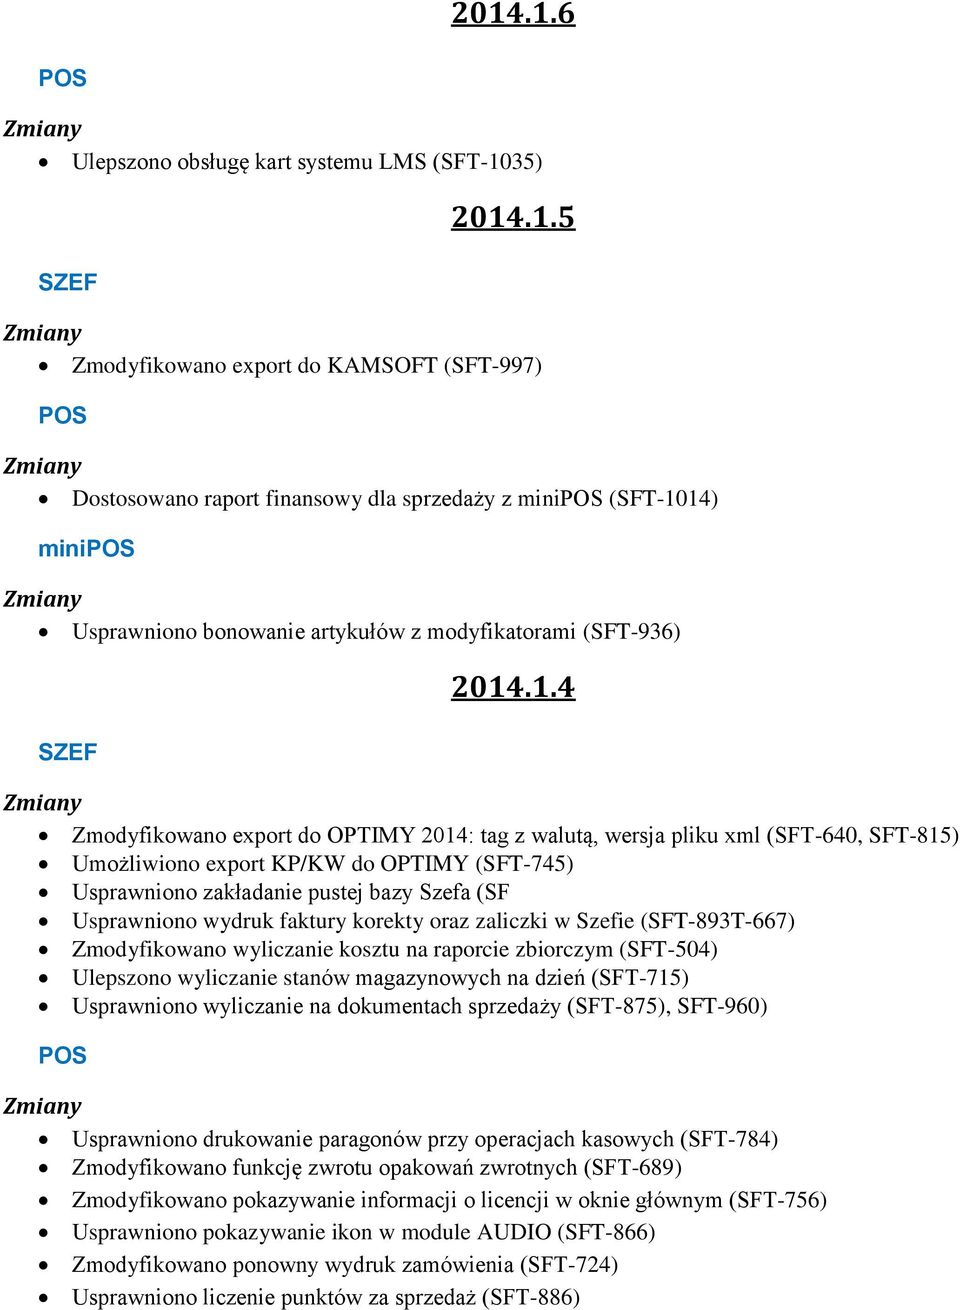 14) minipos Zmiany Usprawniono bonowanie artykułów z modyfikatorami (SFT-936) SZEF 2014.1.4 Zmiany Zmodyfikowano export do OPTIMY 2014: tag z walutą, wersja pliku xml (SFT-640, SFT-815) Umożliwiono